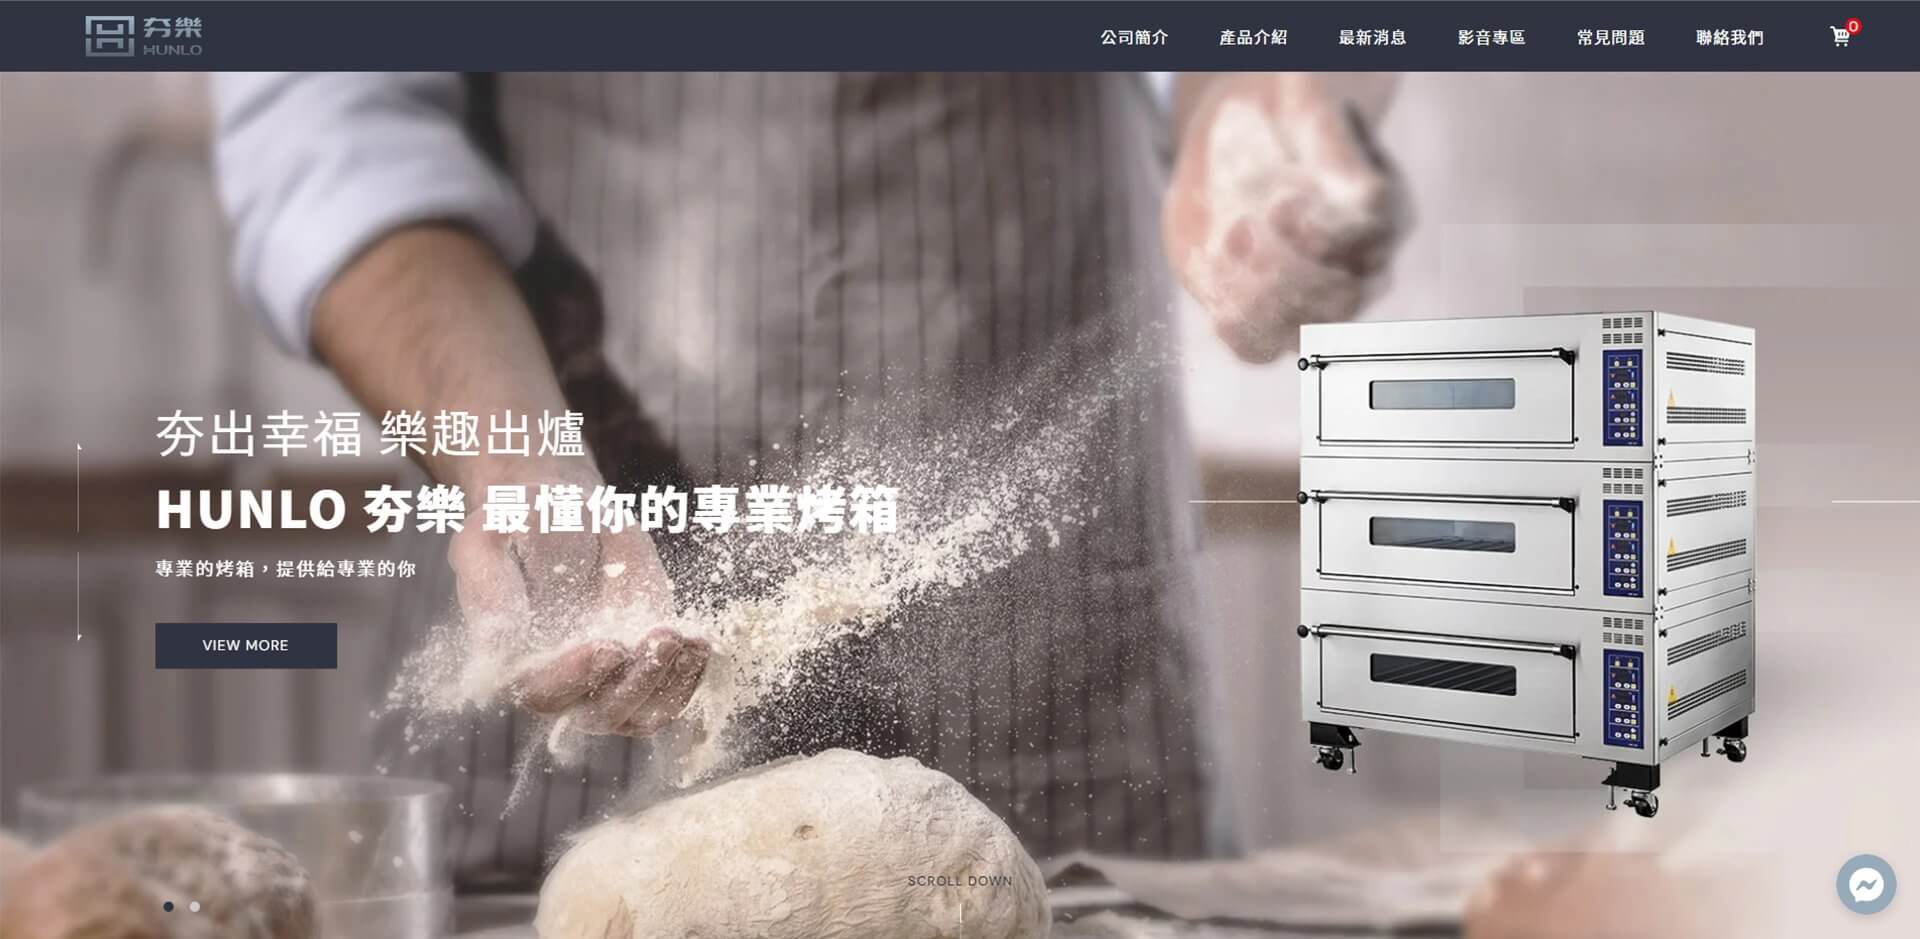 【HUNLO夯樂烤箱-烘焙設備】舊網站改版前後注意事項｜客製化網頁設計